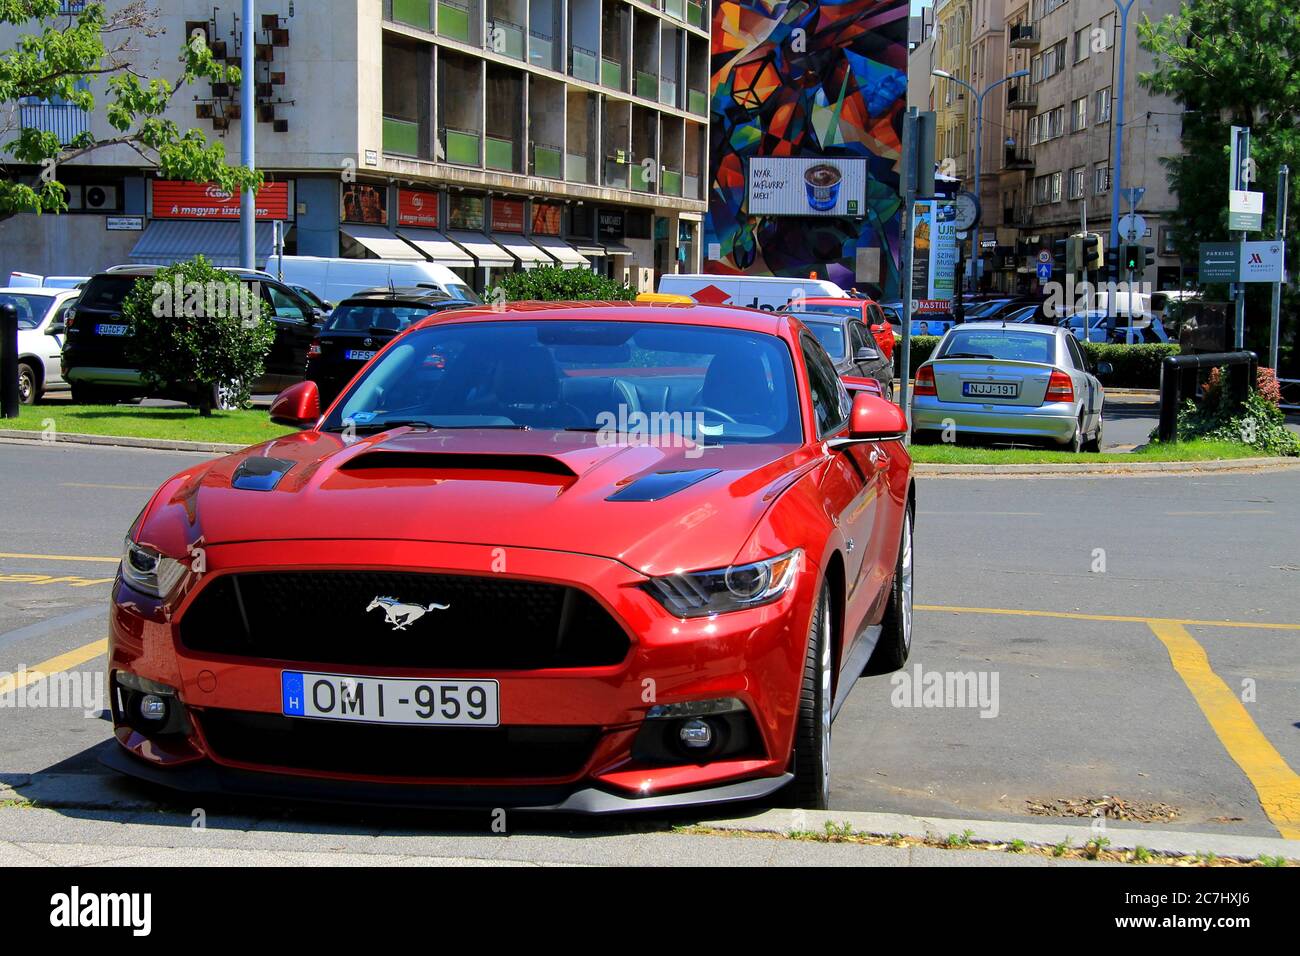 Voiture de sport américaine rouge Ford Mustang avec l'emblème cheval sur le capot est debout sur une rue dans la ville hongroise. Budapest, Hongrie, Europe. Banque D'Images